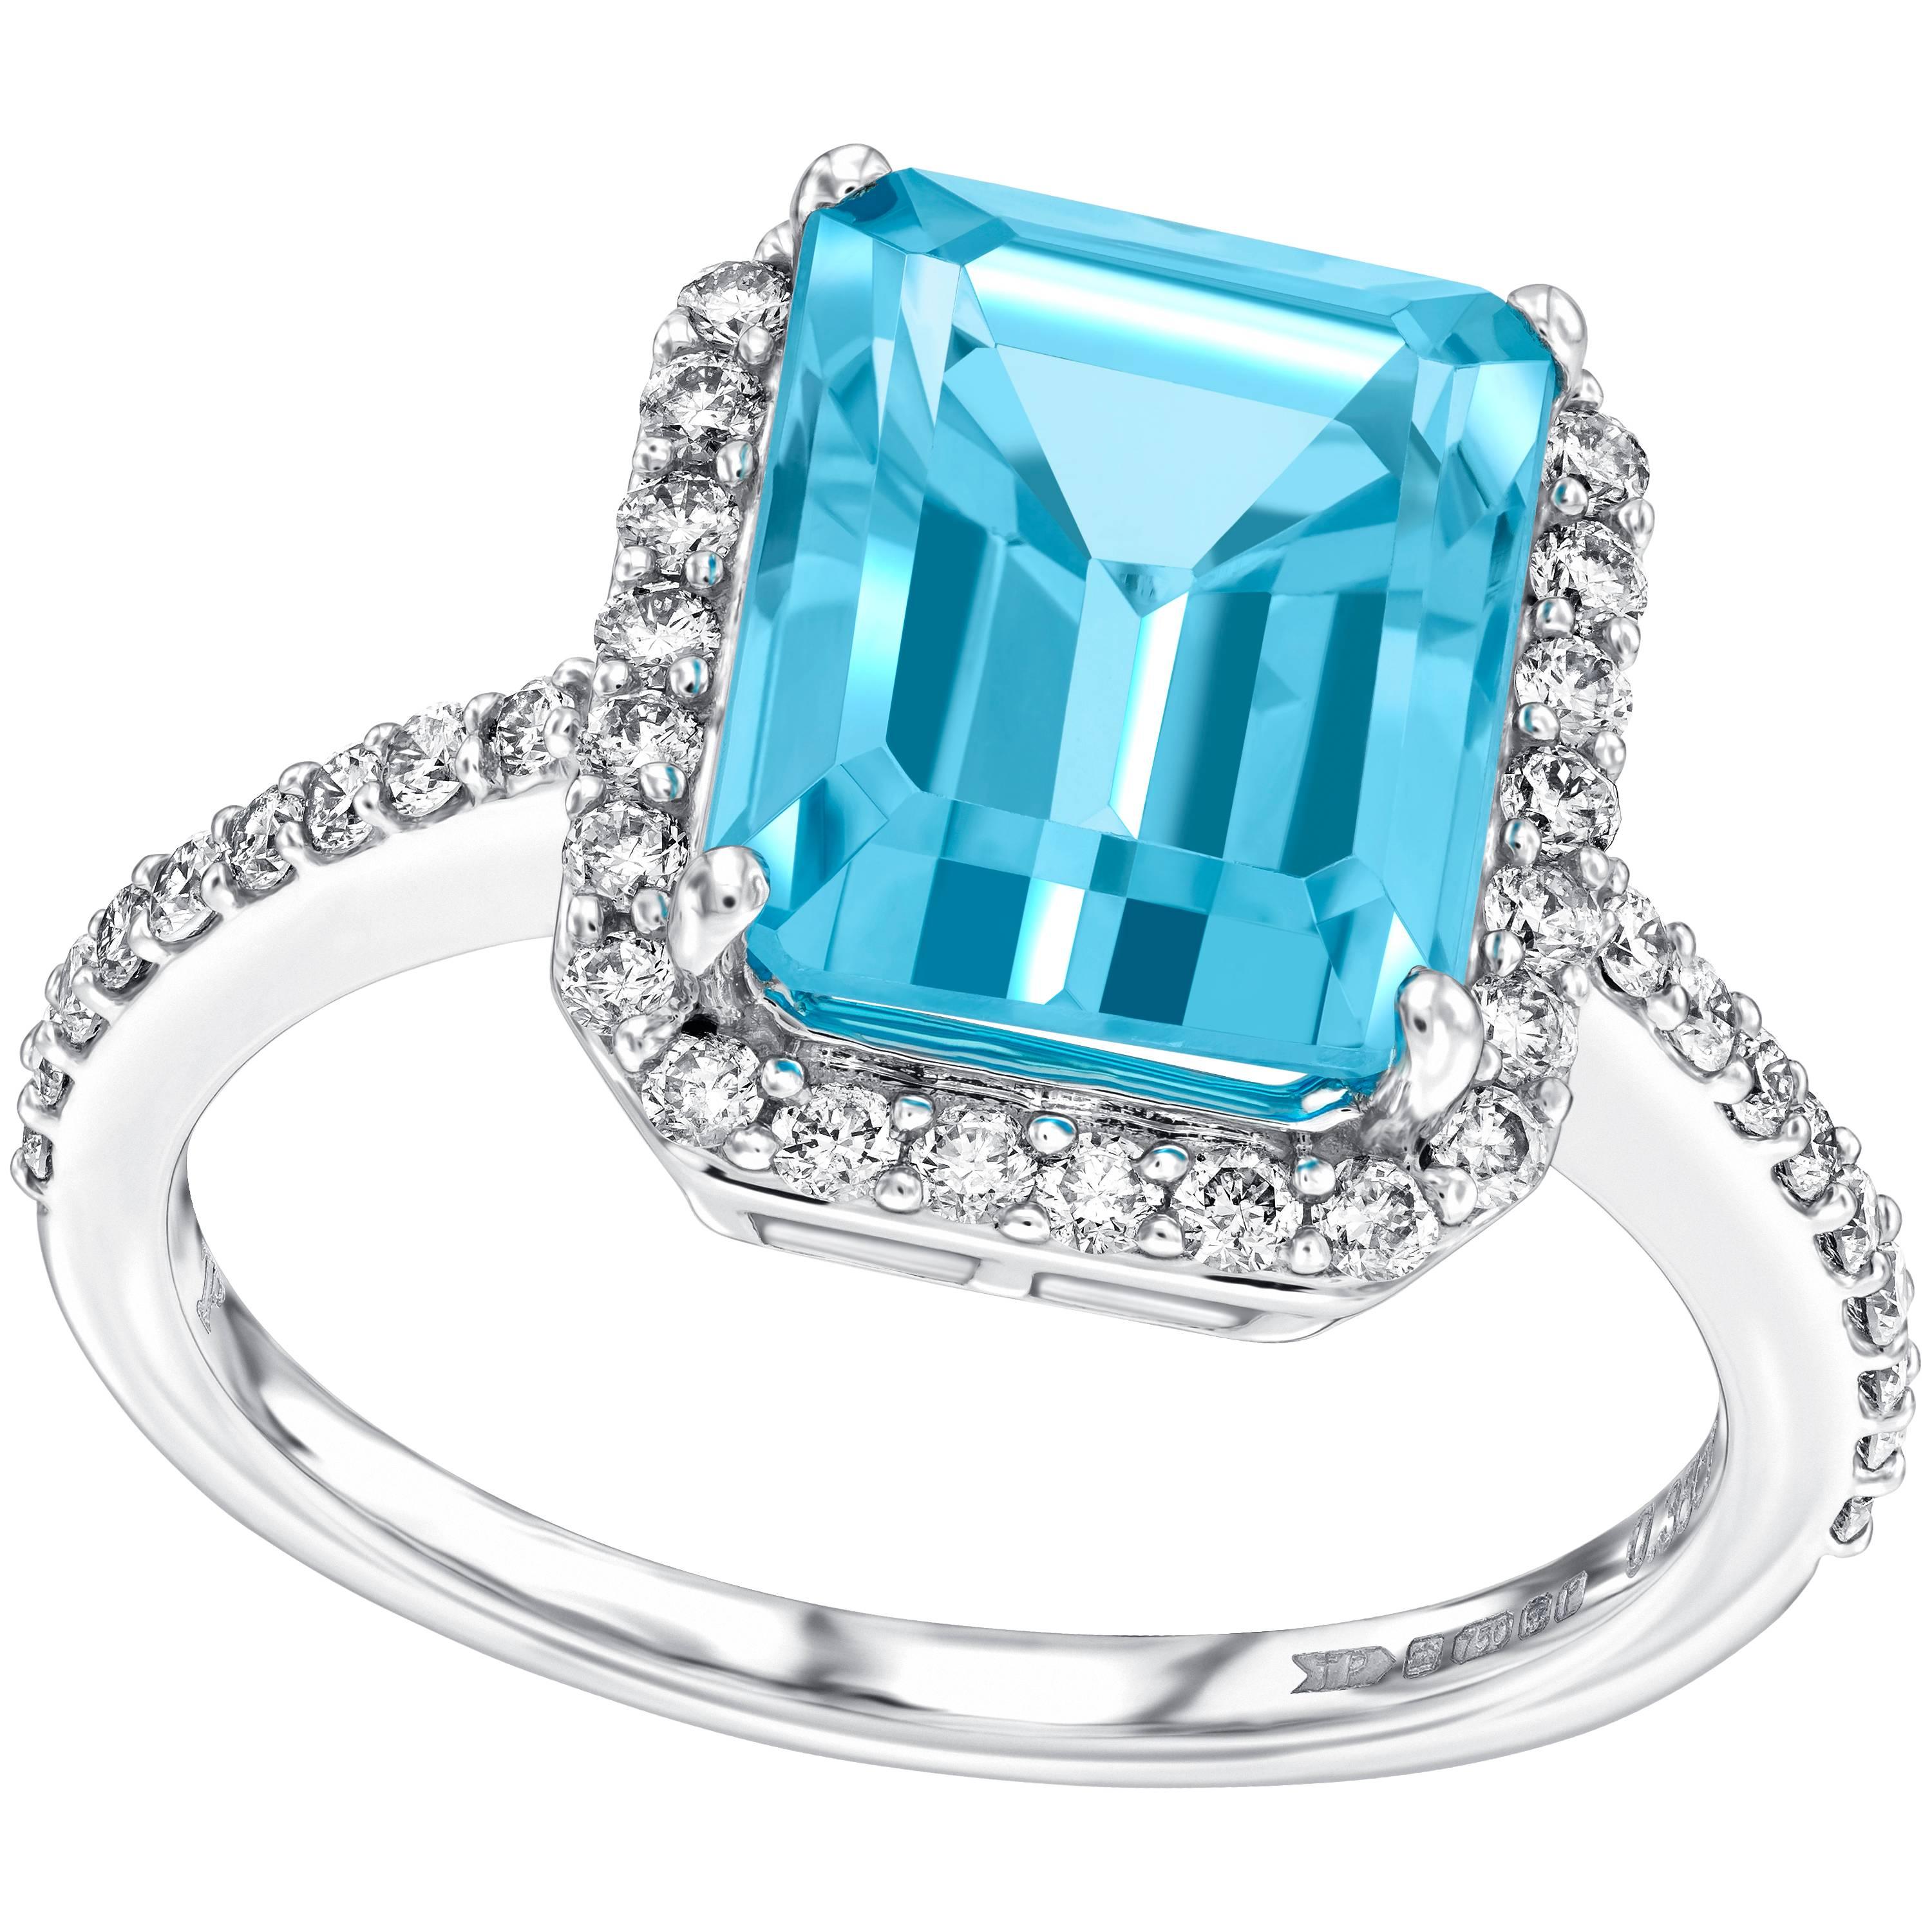 Cette magnifique bague de fiançailles en topaze bleue de 5,00 carats de taille émeraude est entourée d'un halo de diamants blancs ronds et brillants de 0,38 carat. Cette bague a un poids total de pierres précieuses de 5,38 carats. Avec une qualité